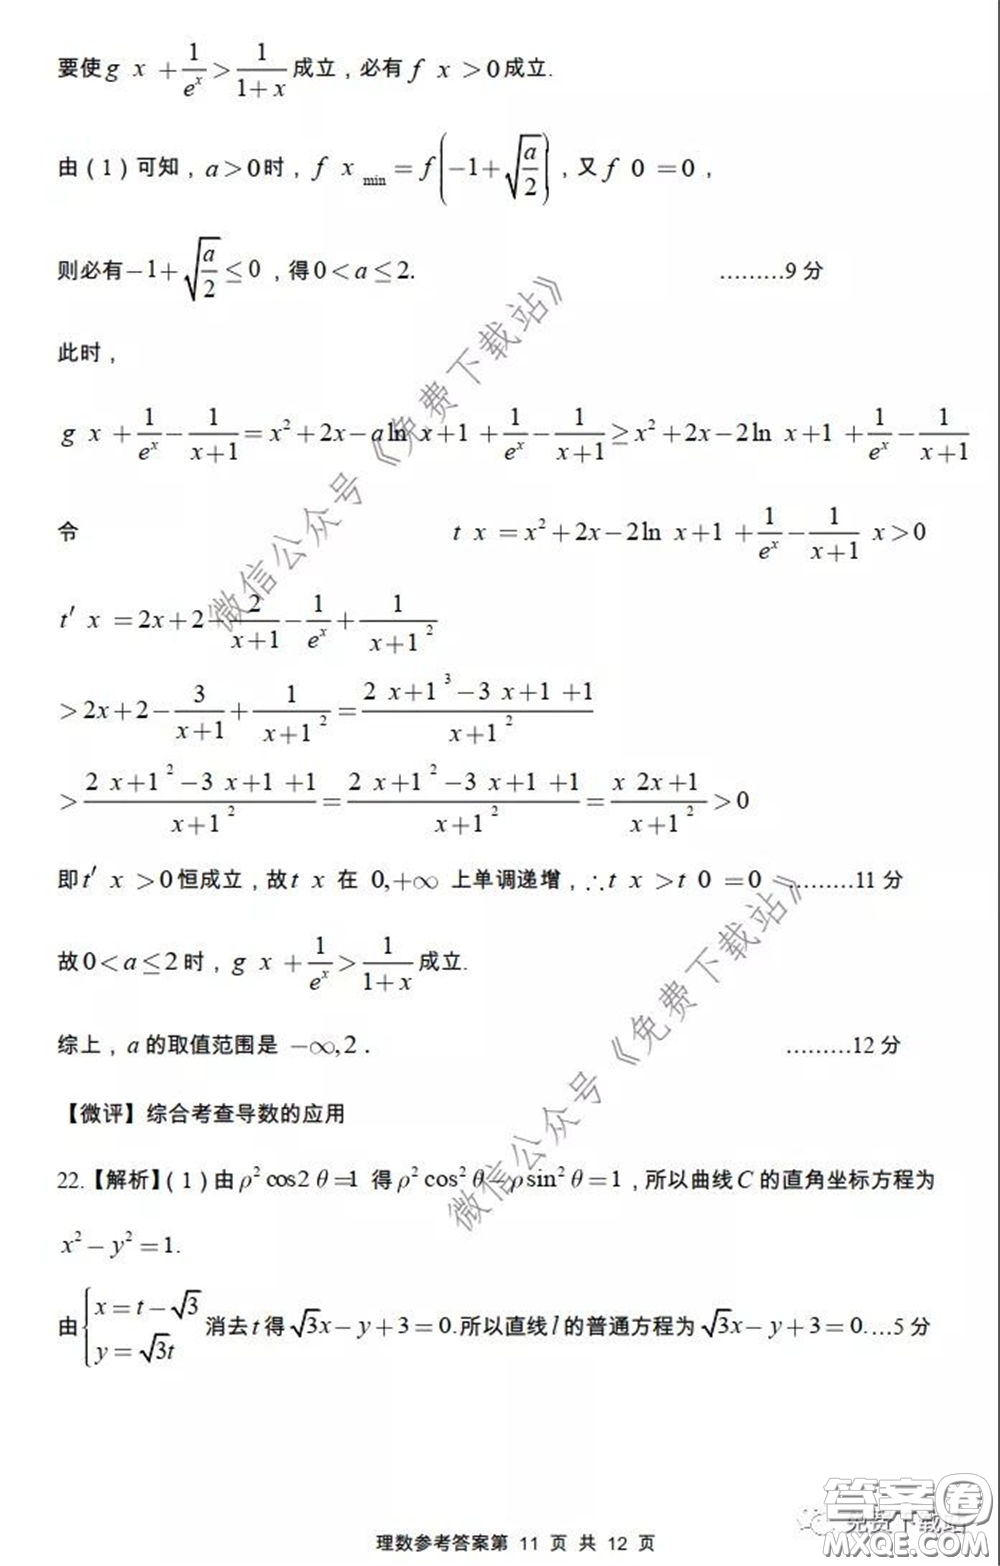 2020年荆门市高三年级高考模拟考试理科数学试题及答案